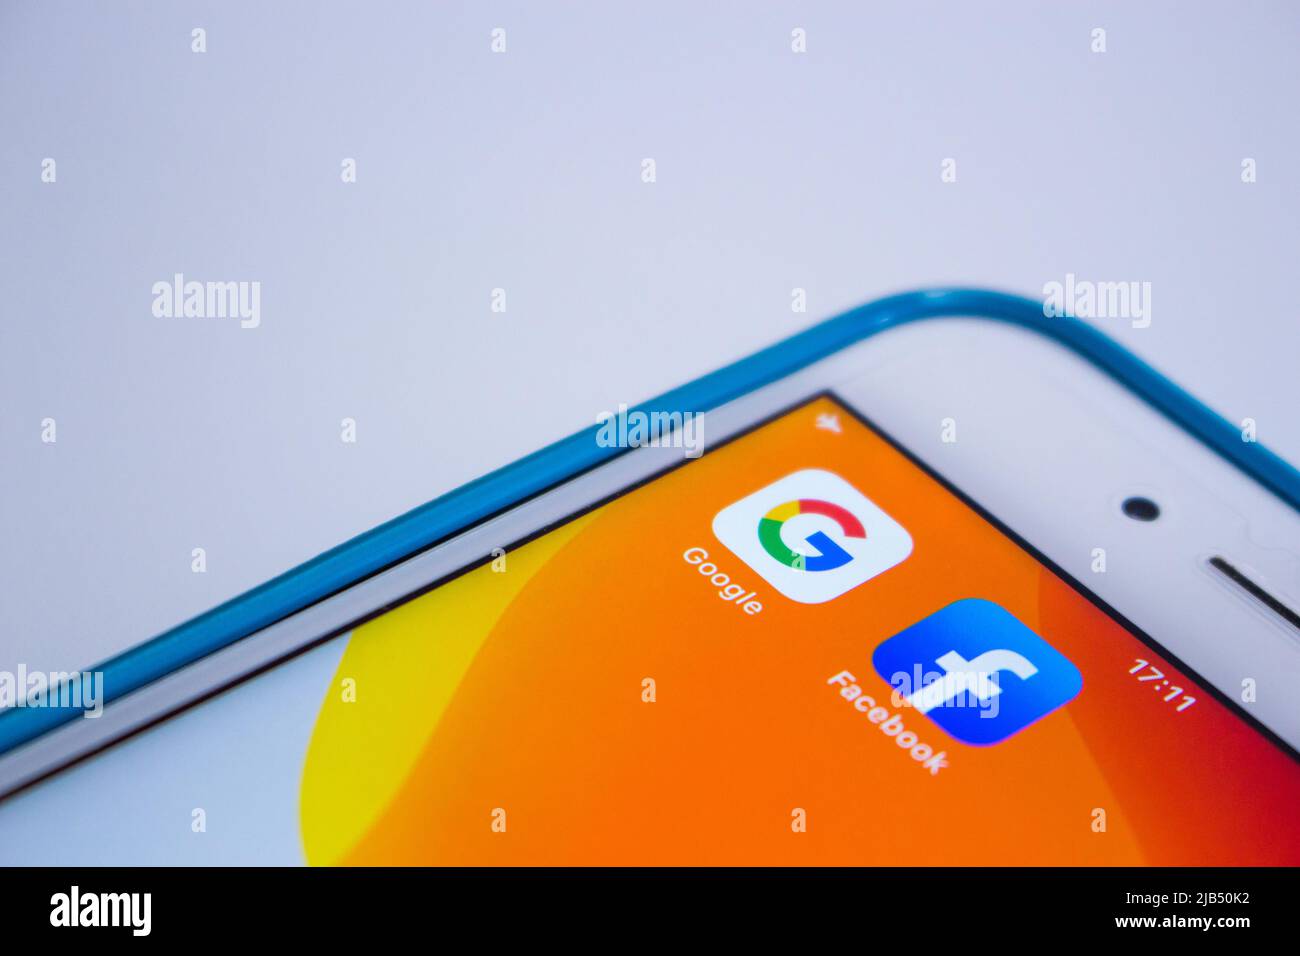 Kumamoto, Japan - May 21 2020 : Google & Facebook icons on orange iPhone screen on white background. Stock Photo